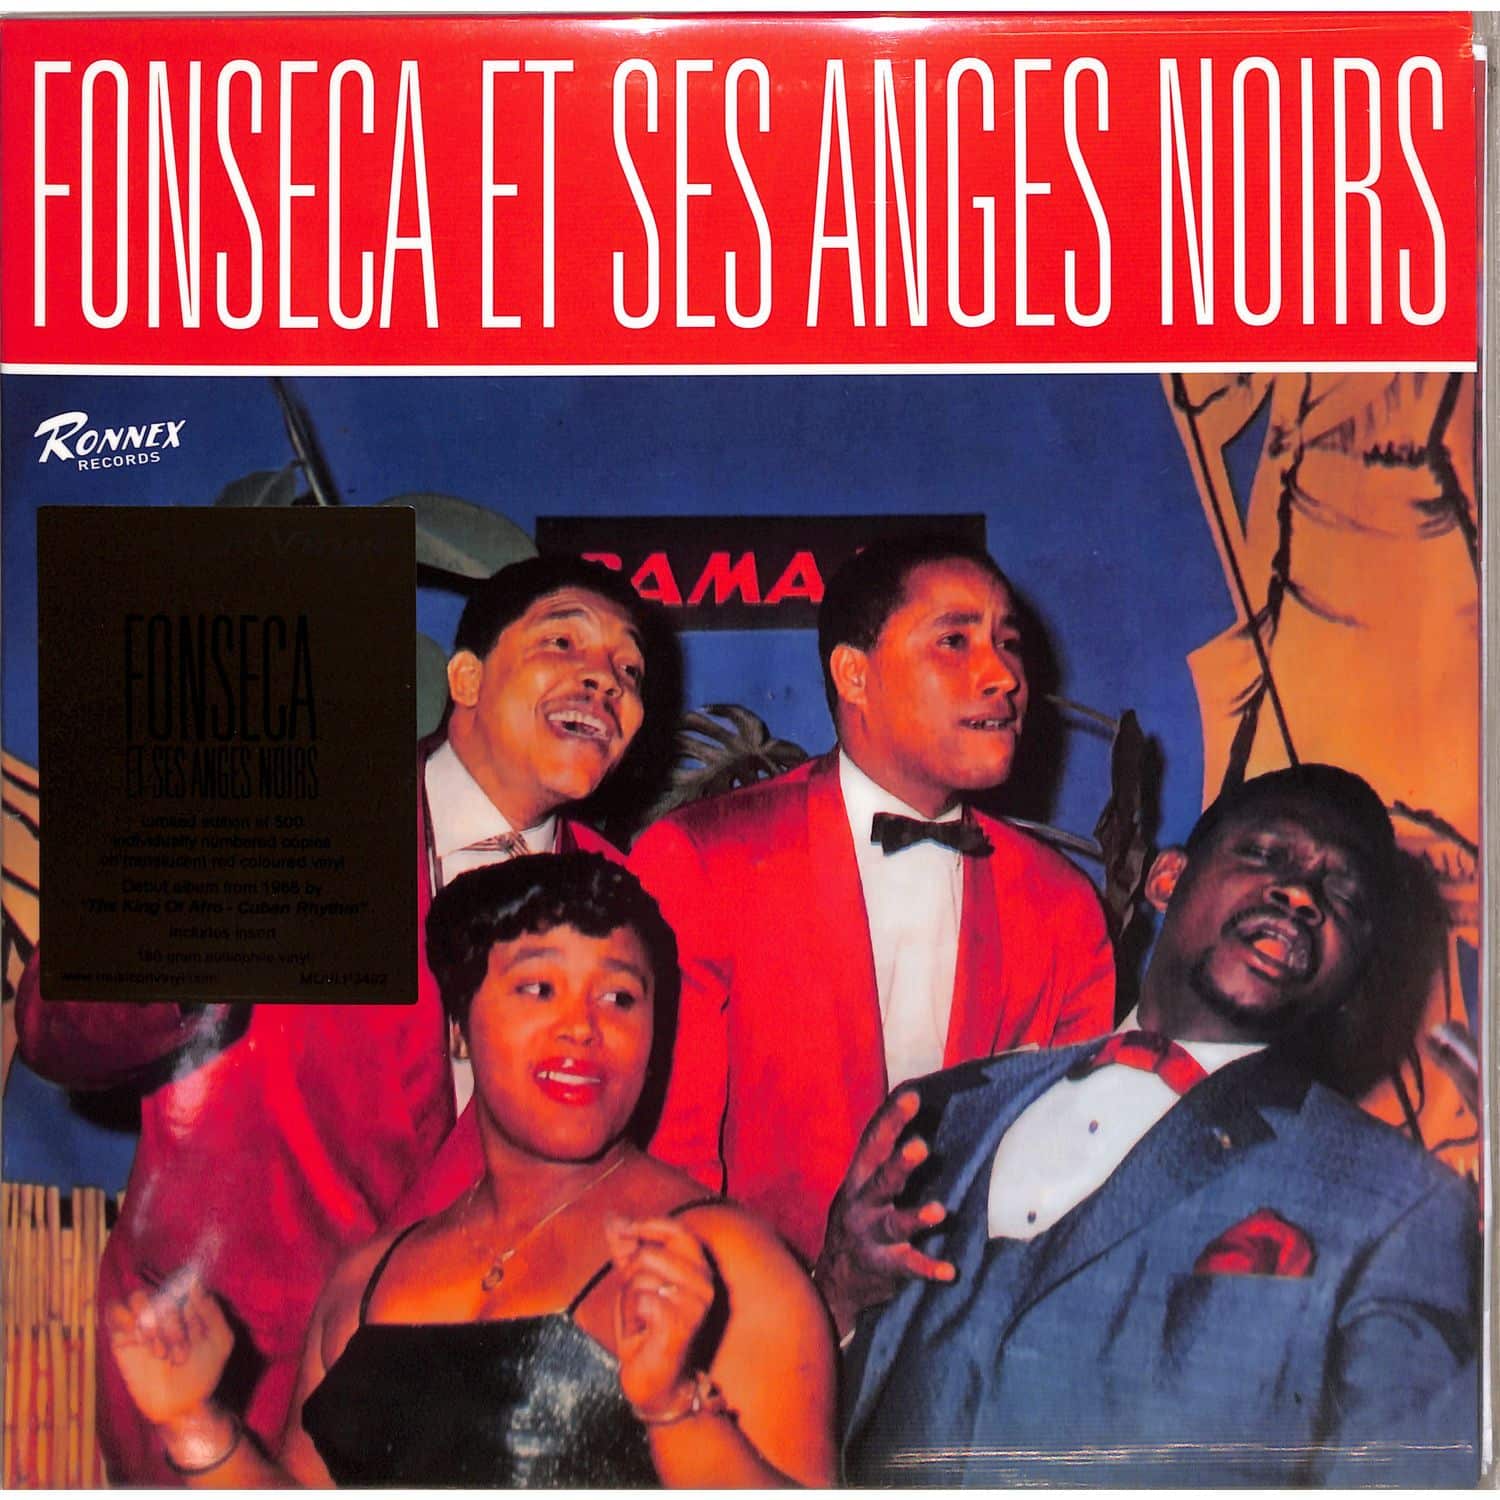 Fonseca Et Ses Anges Noirs - FONSECA ET SES ANGES NOIRS 